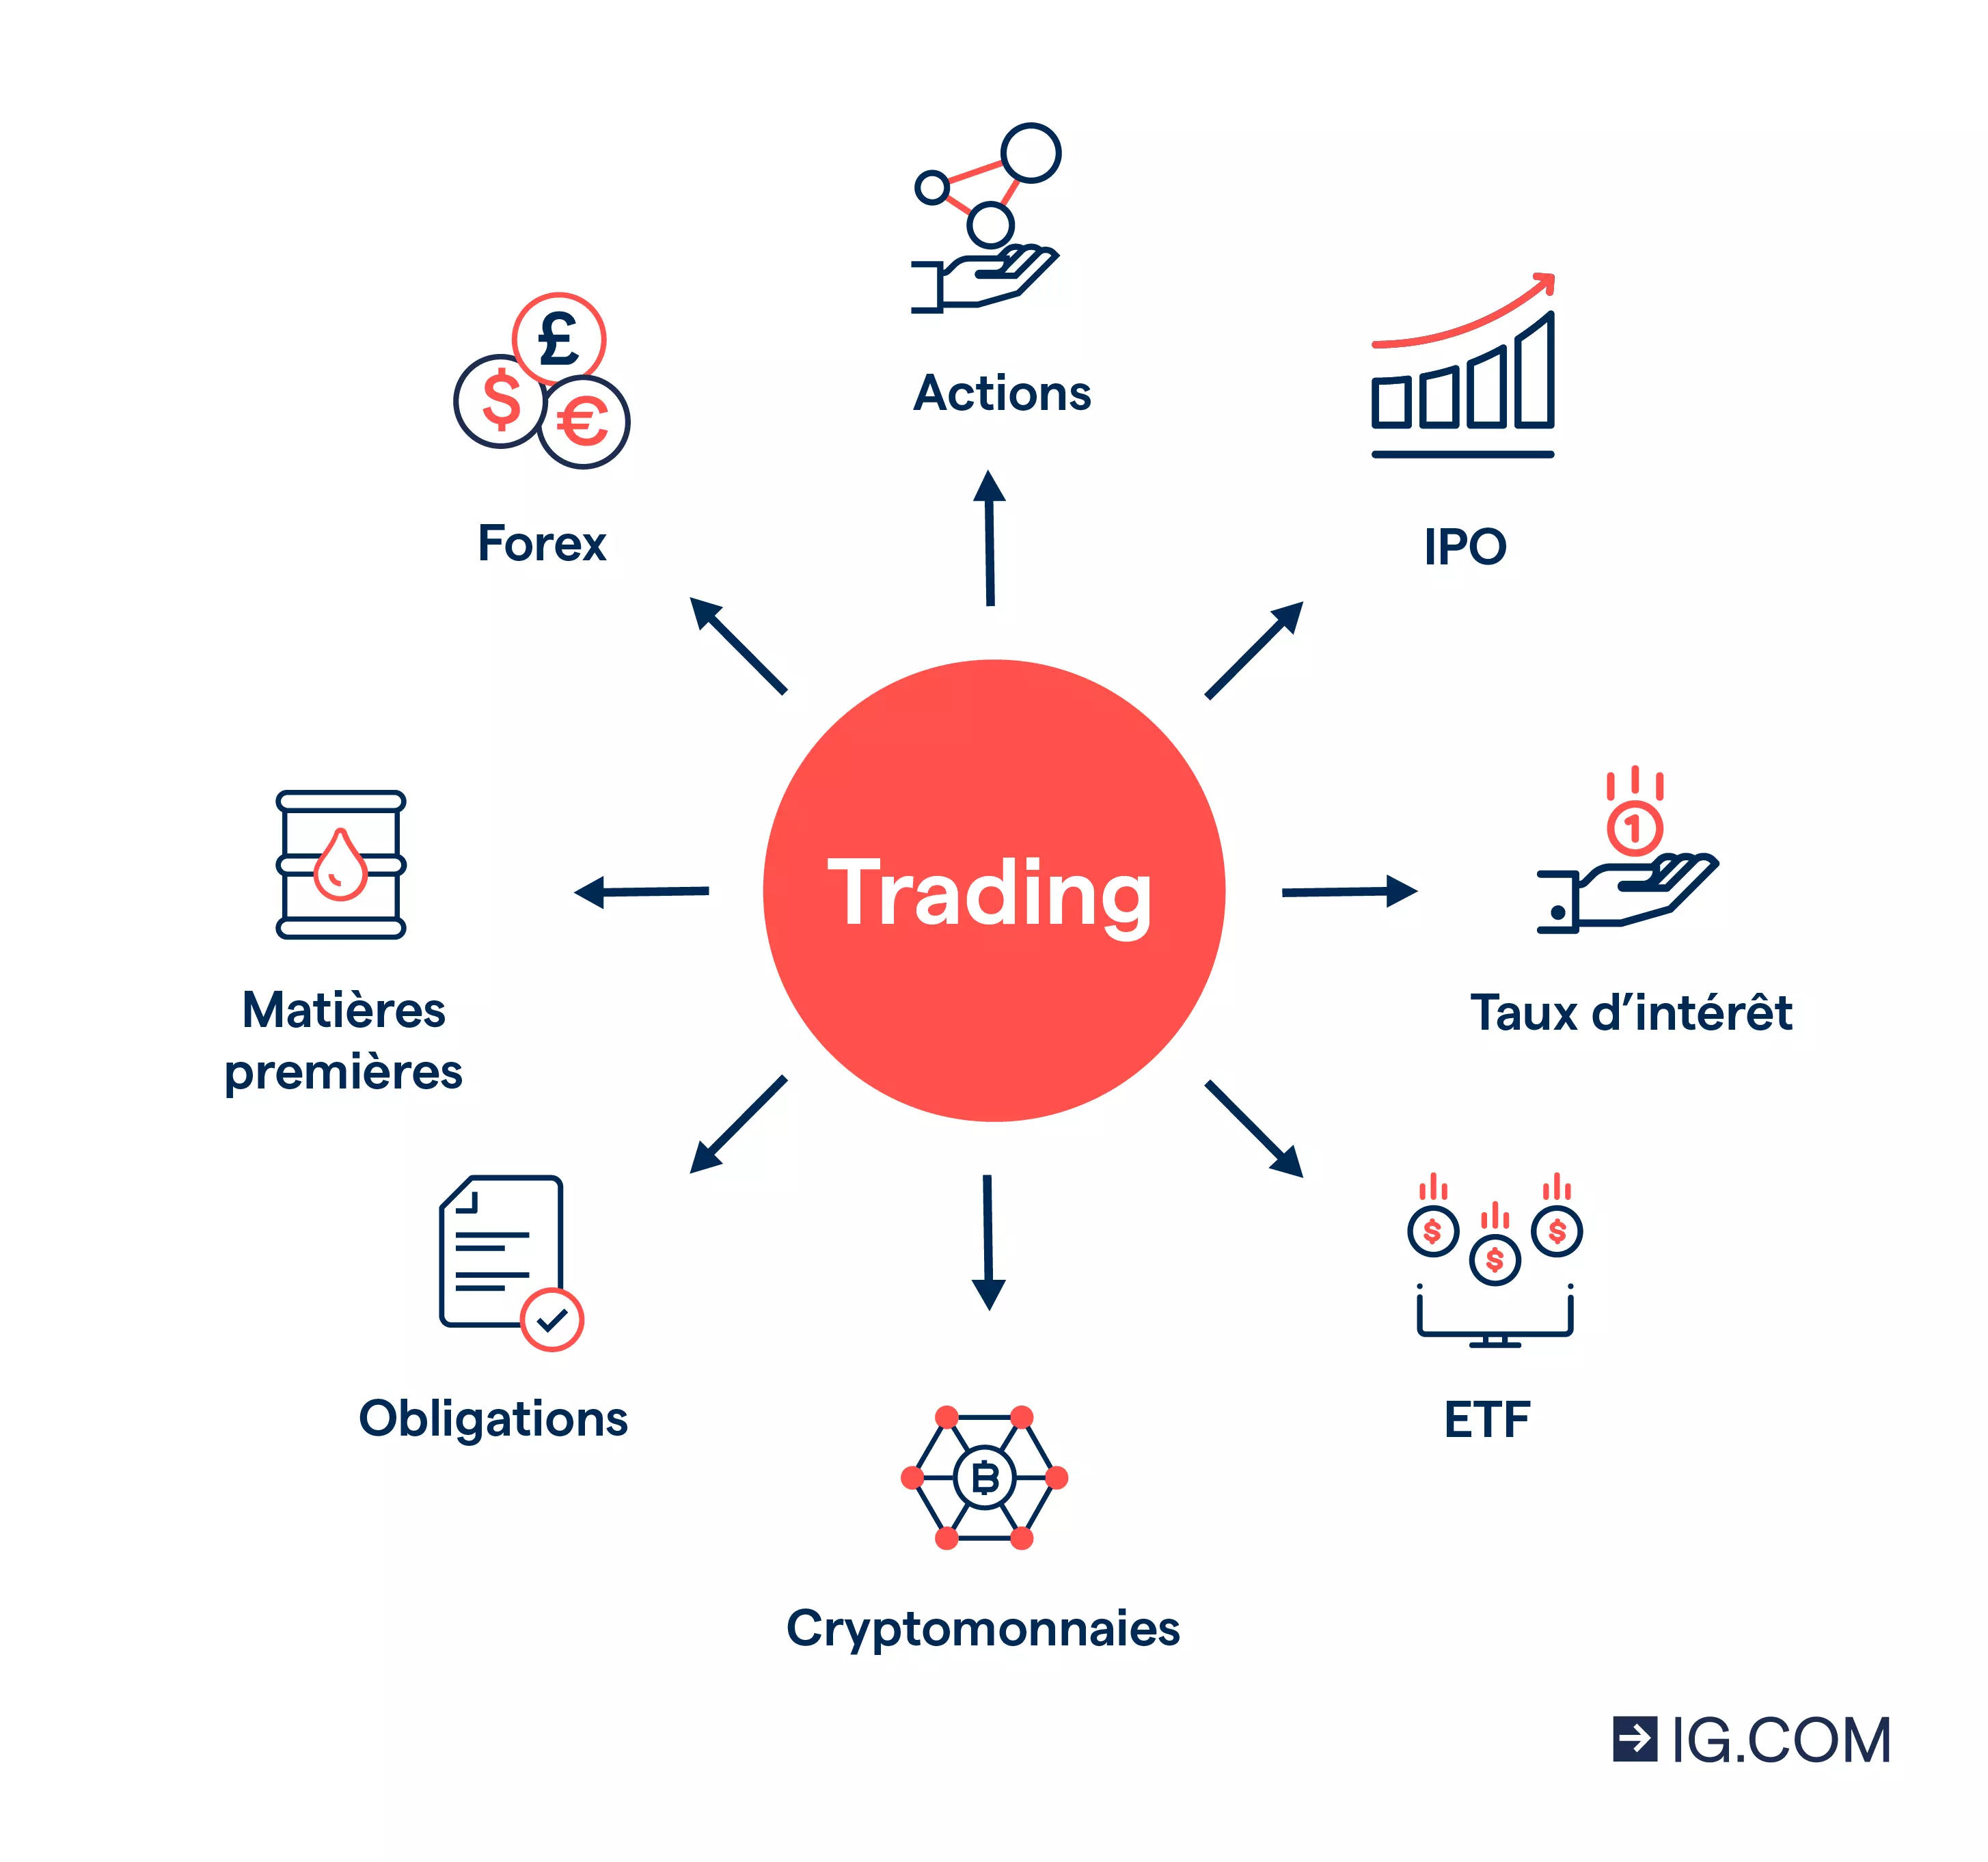 Diagramme avec des icônes représentant les différents actifs financiers que vous pouvez trader, dont le Forex, les actions, les indices et les matières premières.